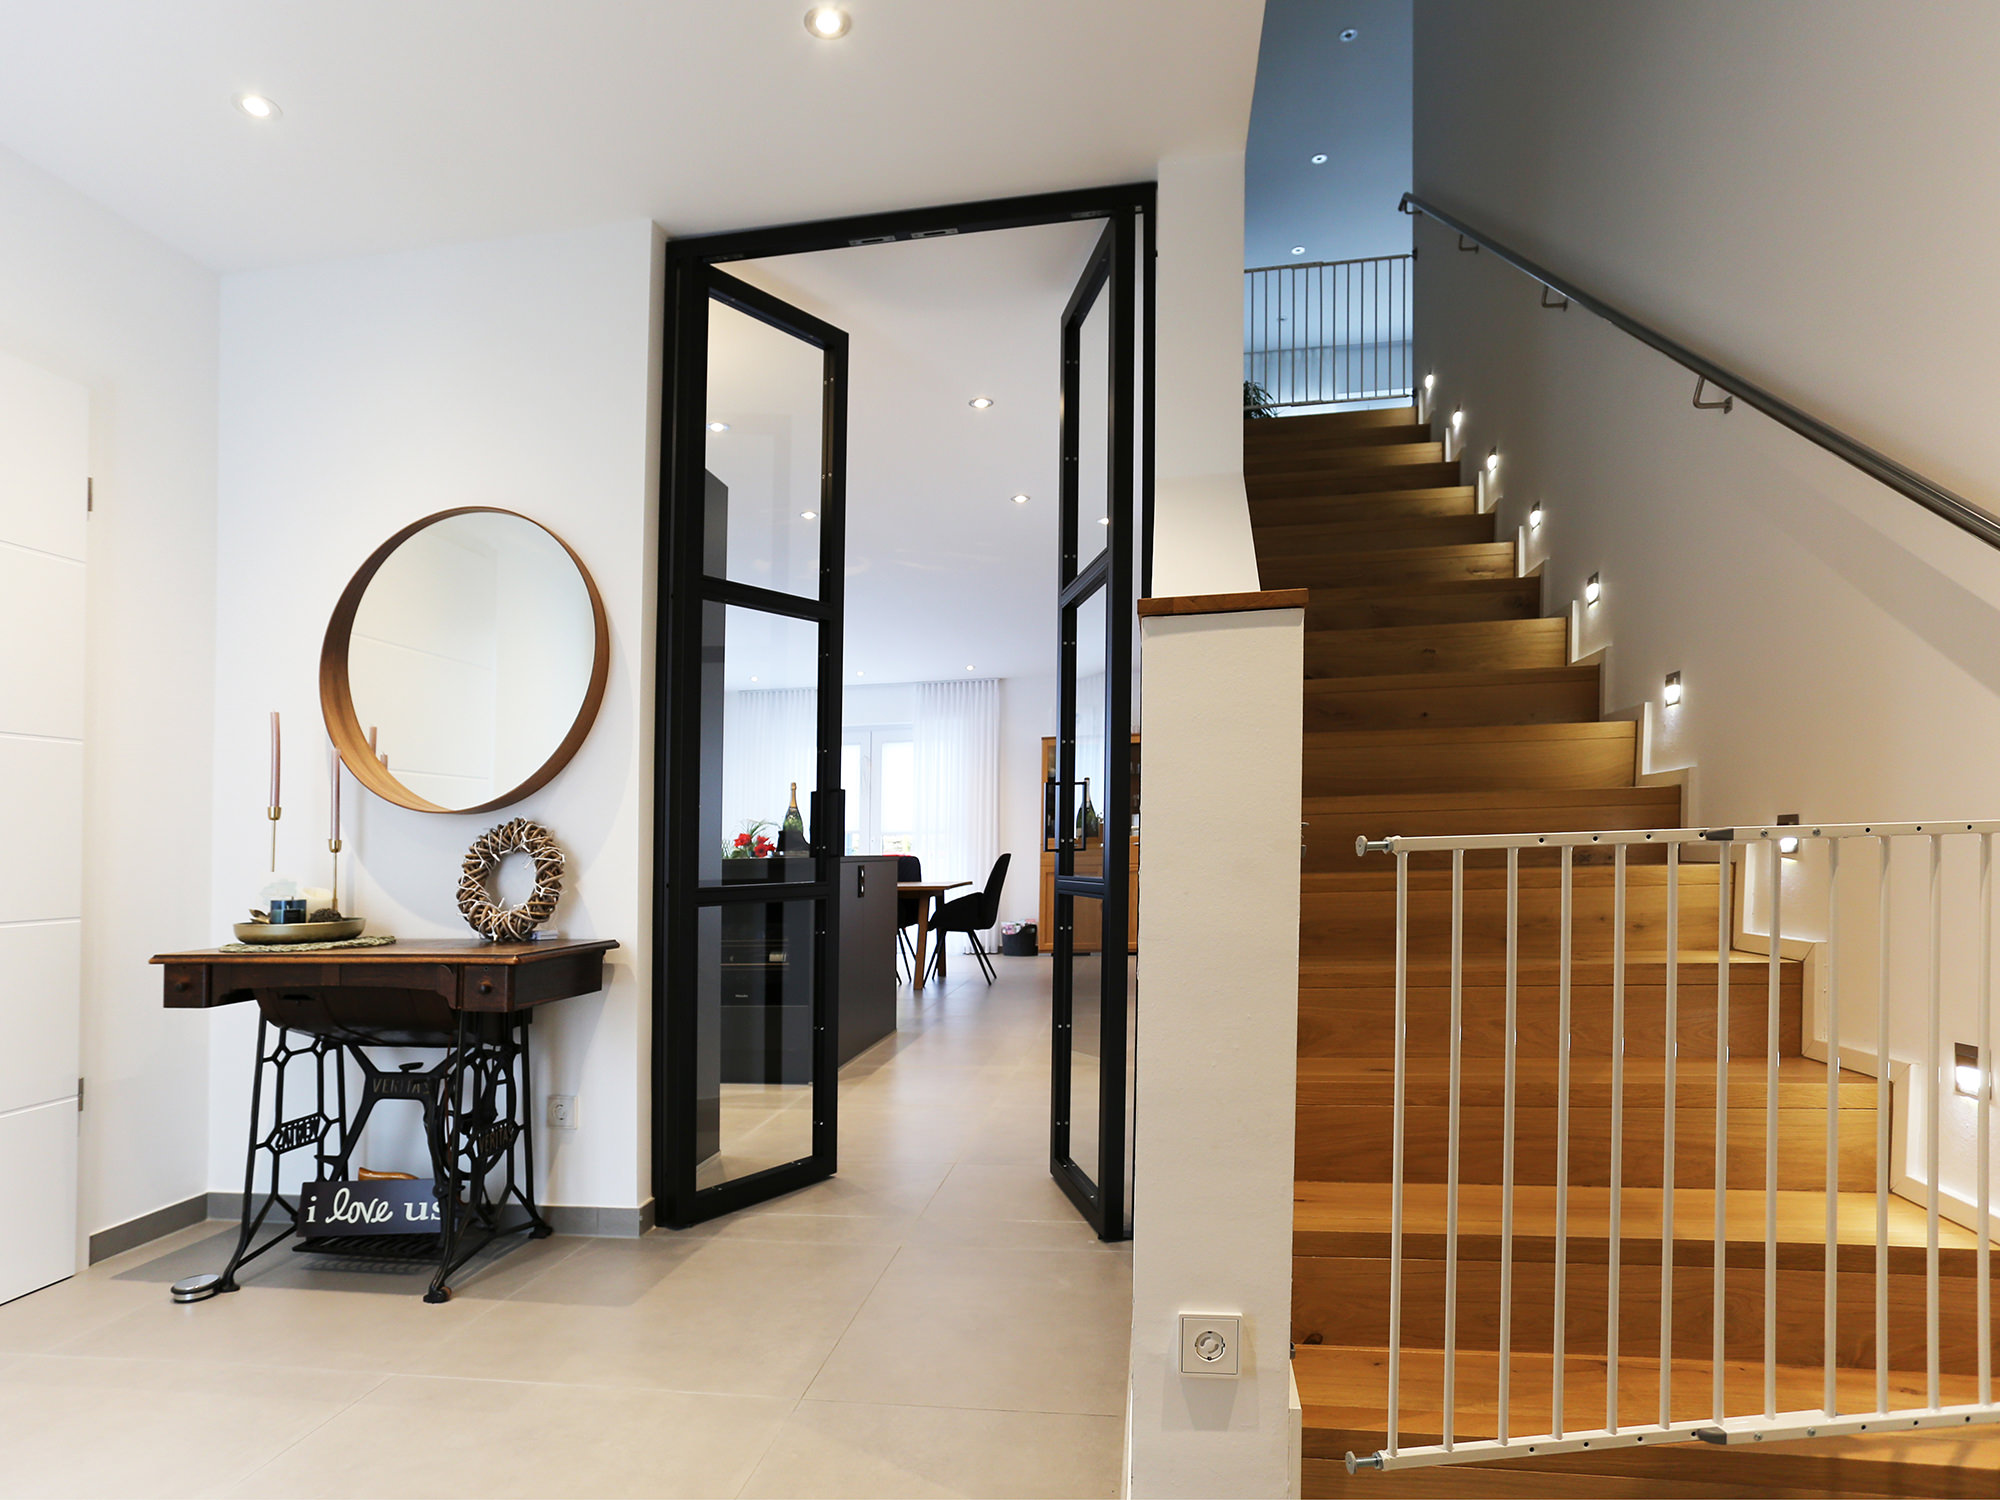 Neubau eines Einfamilienhauses, Remscheid - ah-architektur.de | Alisic-Haverkamp – Wir verfolgen das Ziel, funktionelle, kostenbewusste und ambitioniert gestaltete Architektur zu schaffen, die einen ah-Effekt auslöst.